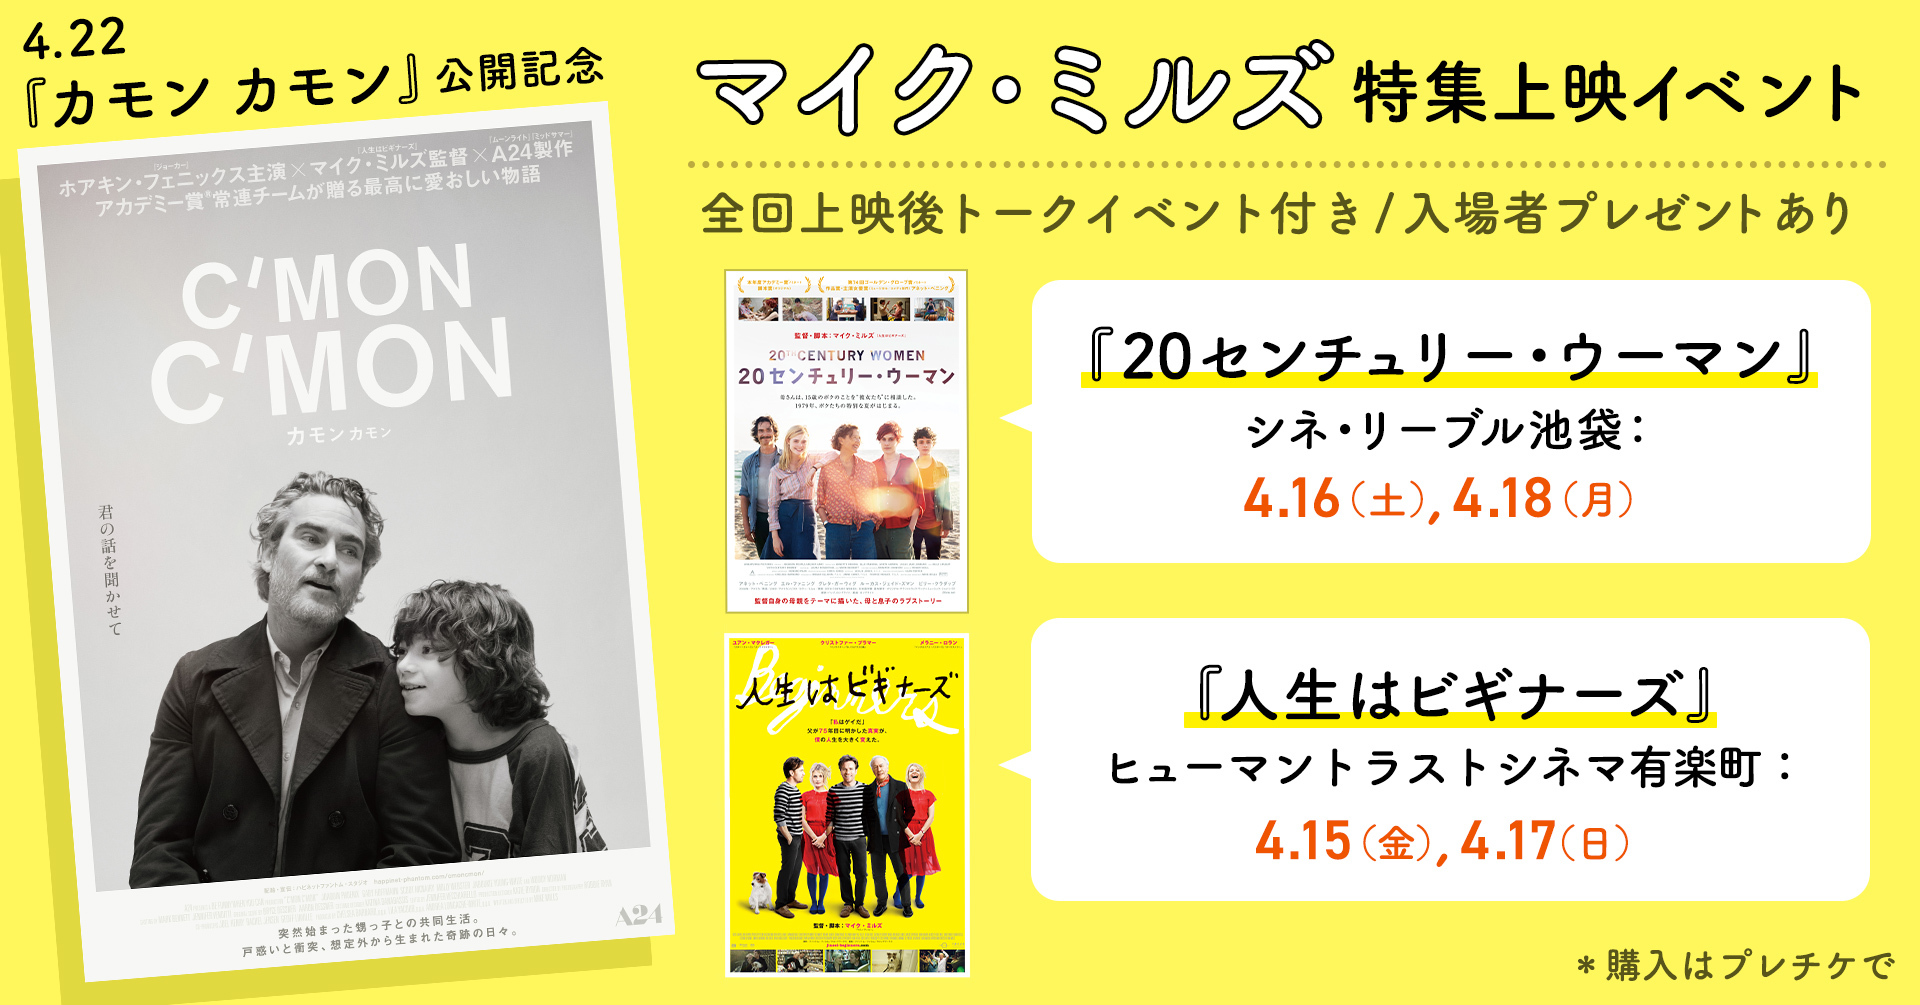 名古屋の映画館「伏見ミリオン座」が本日4月19日で移転オープン3周年　3周年を記念した特別企画が実施中